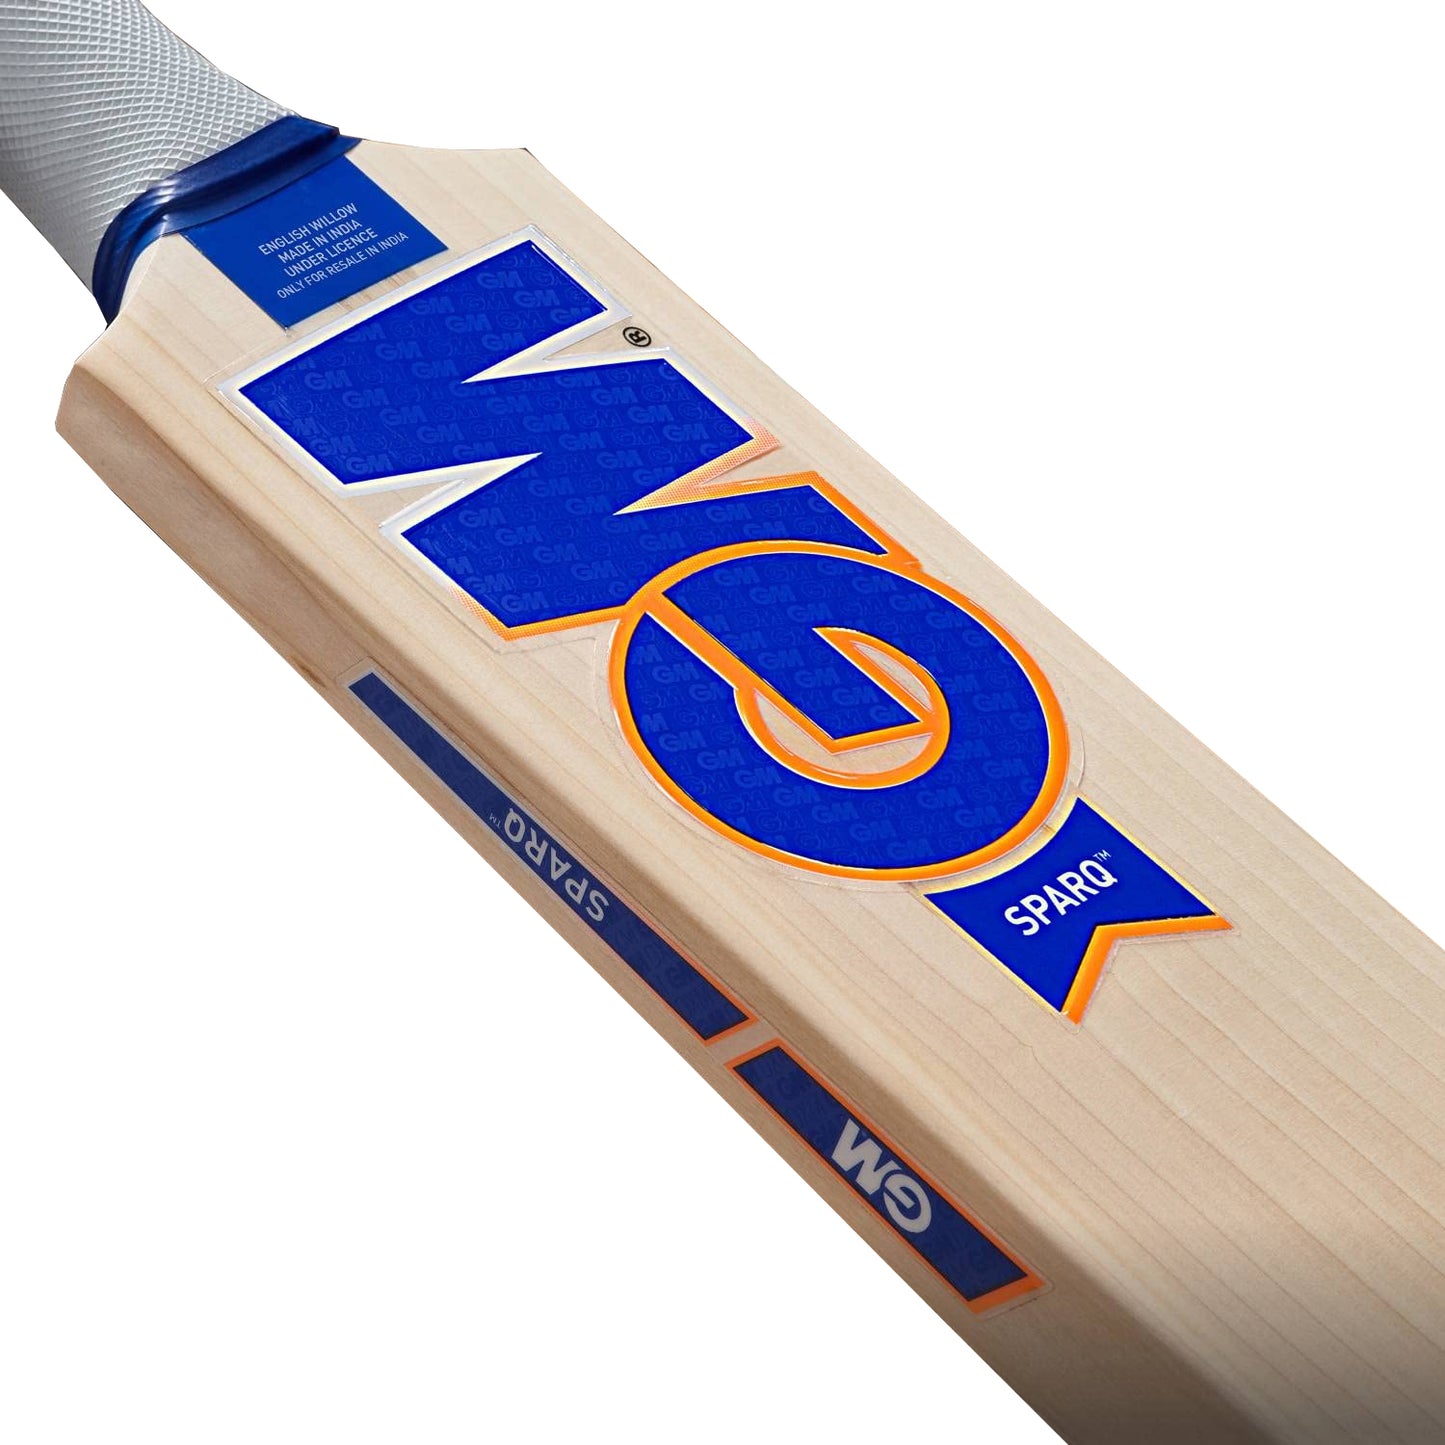 GM Sparq 707 English Willow Cricket Bat - Best Price online Prokicksports.com